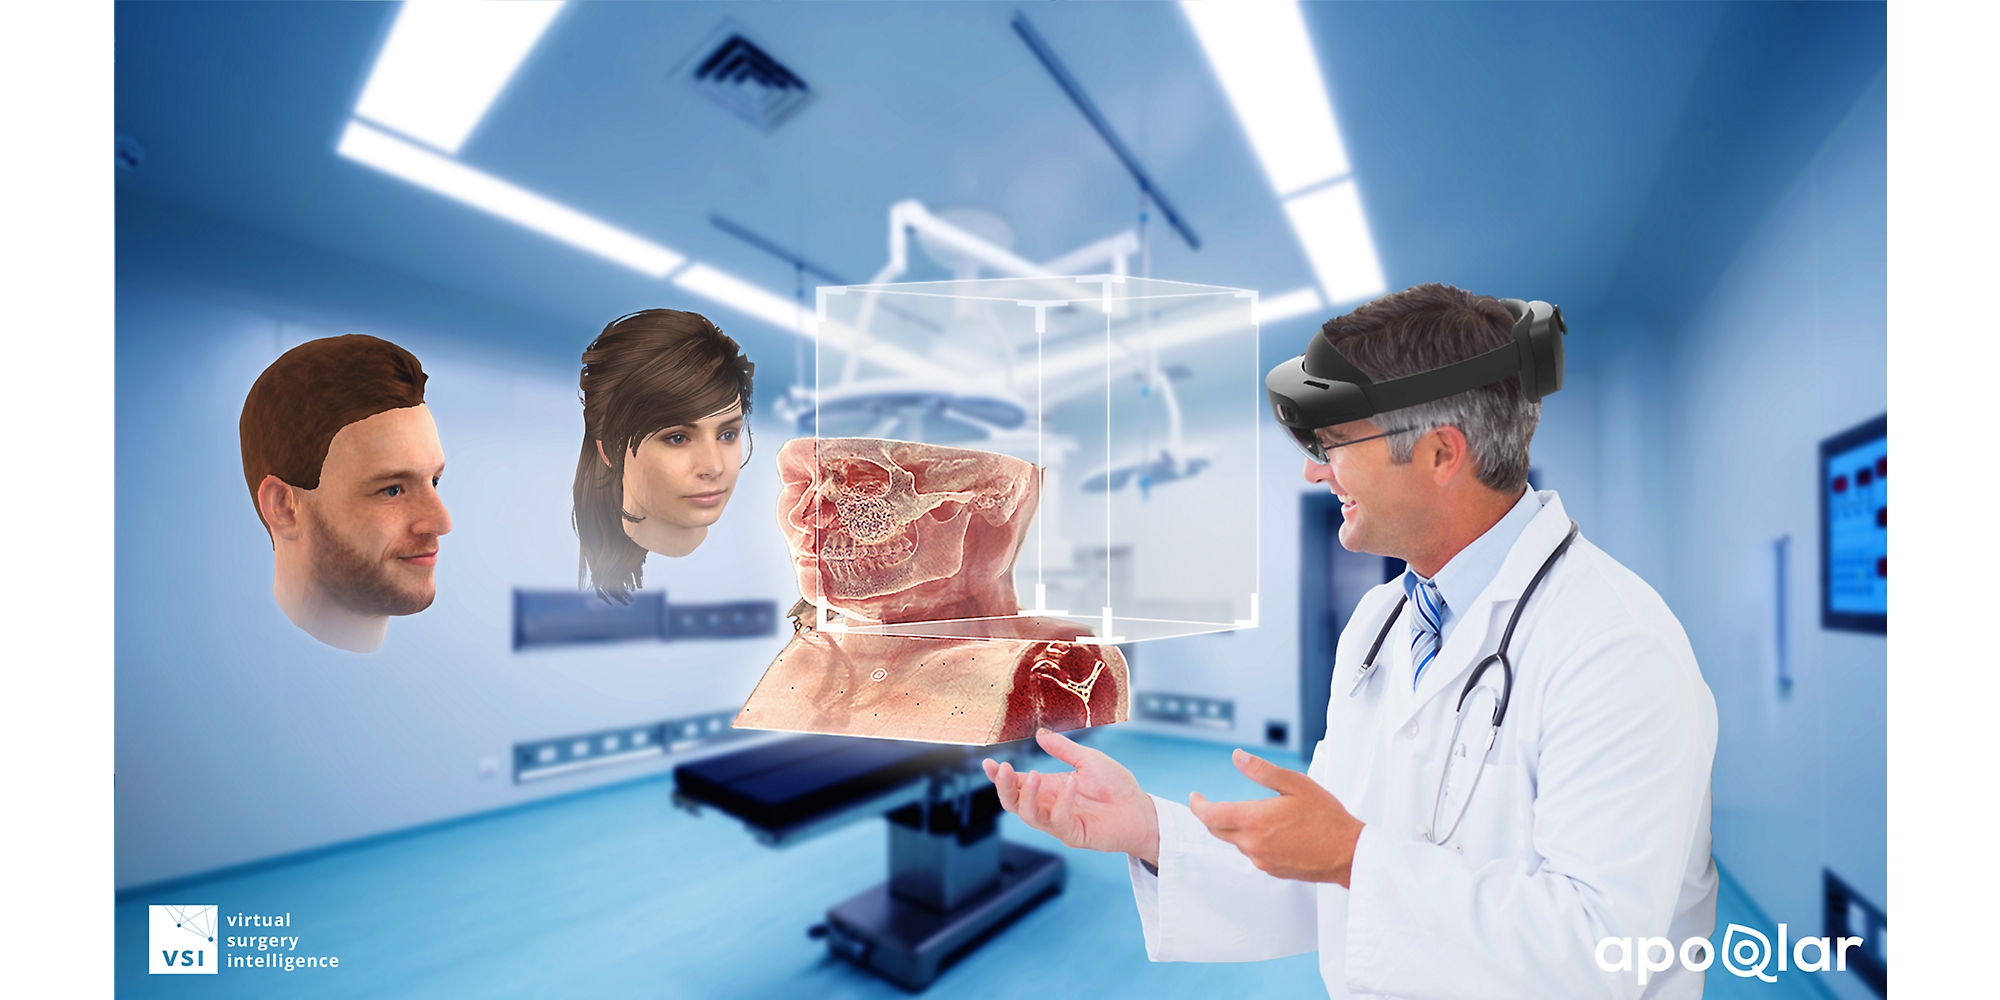 一名醫生使用 HoloLens 2 設備檢查醫療圖表，並在混合實境中與另外兩人交談。